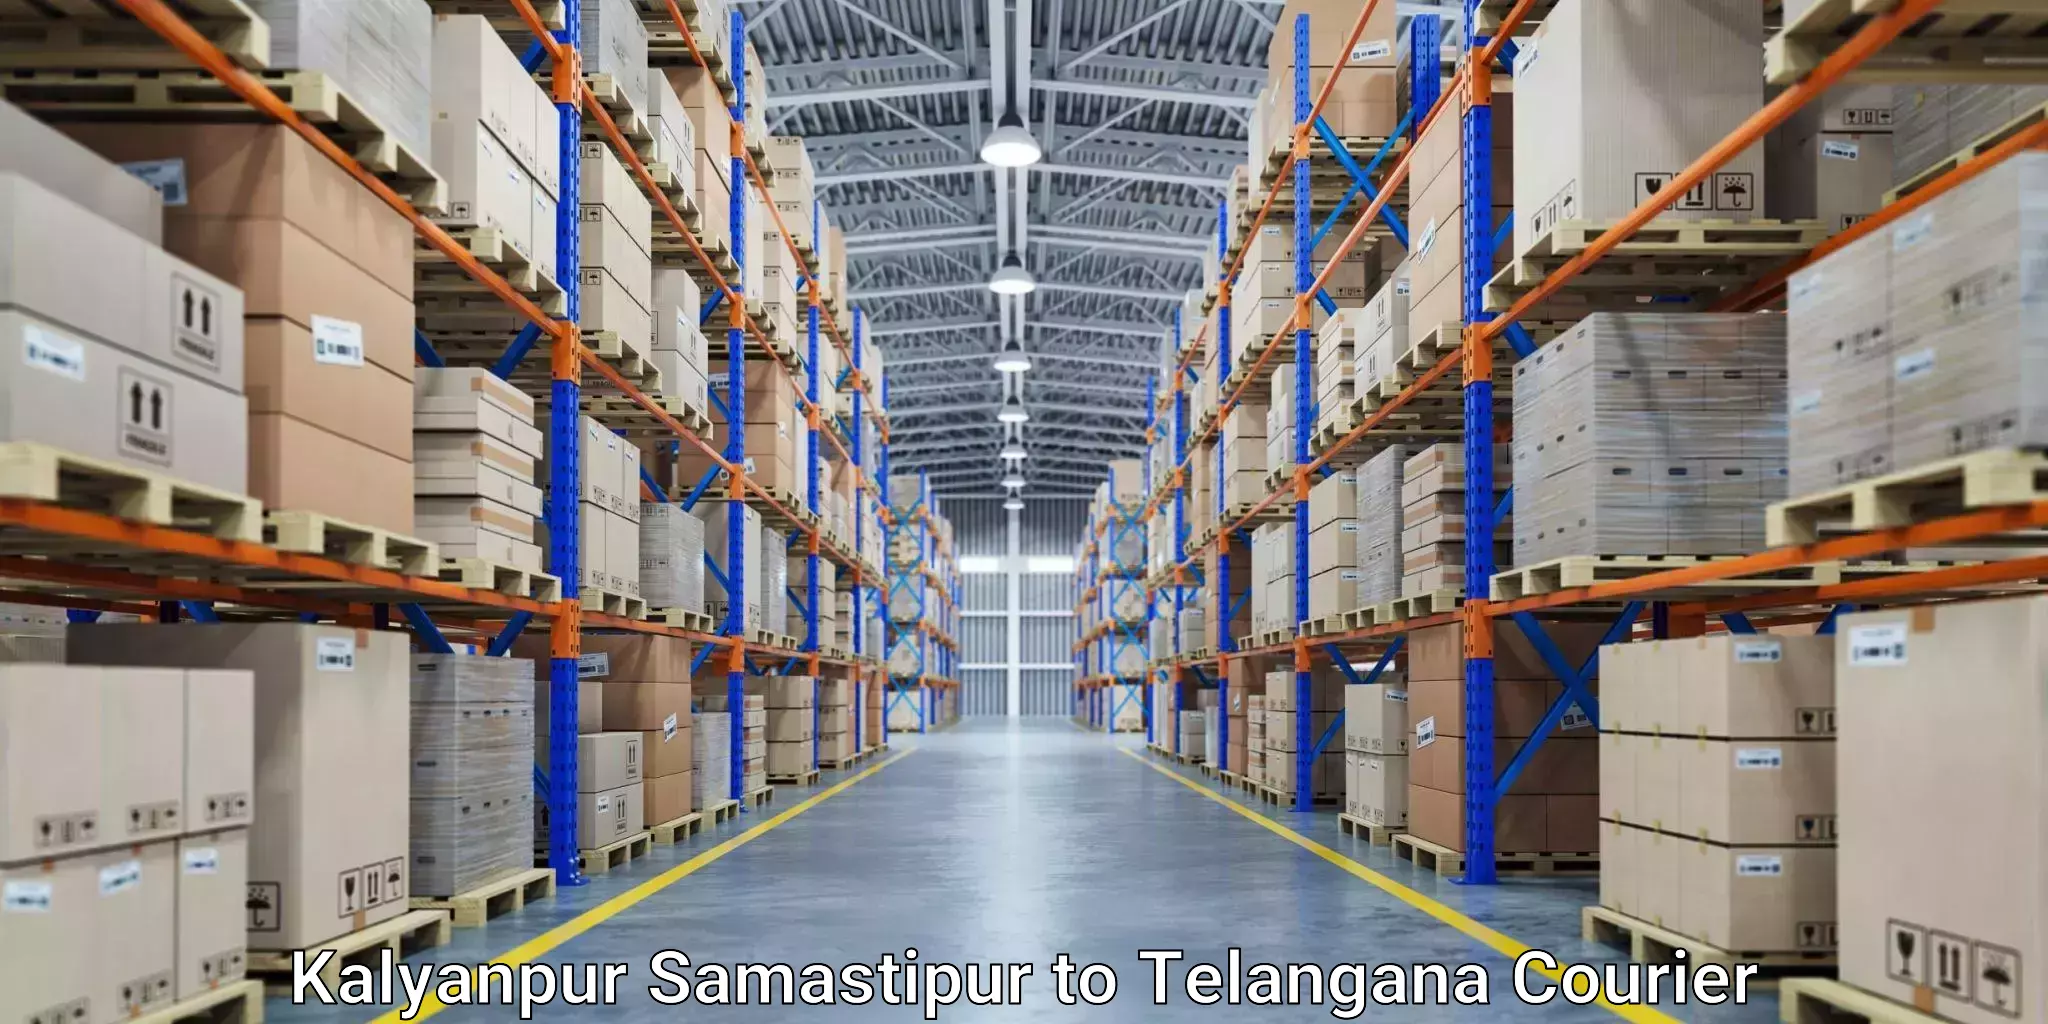 Digital courier platforms Kalyanpur Samastipur to Telangana